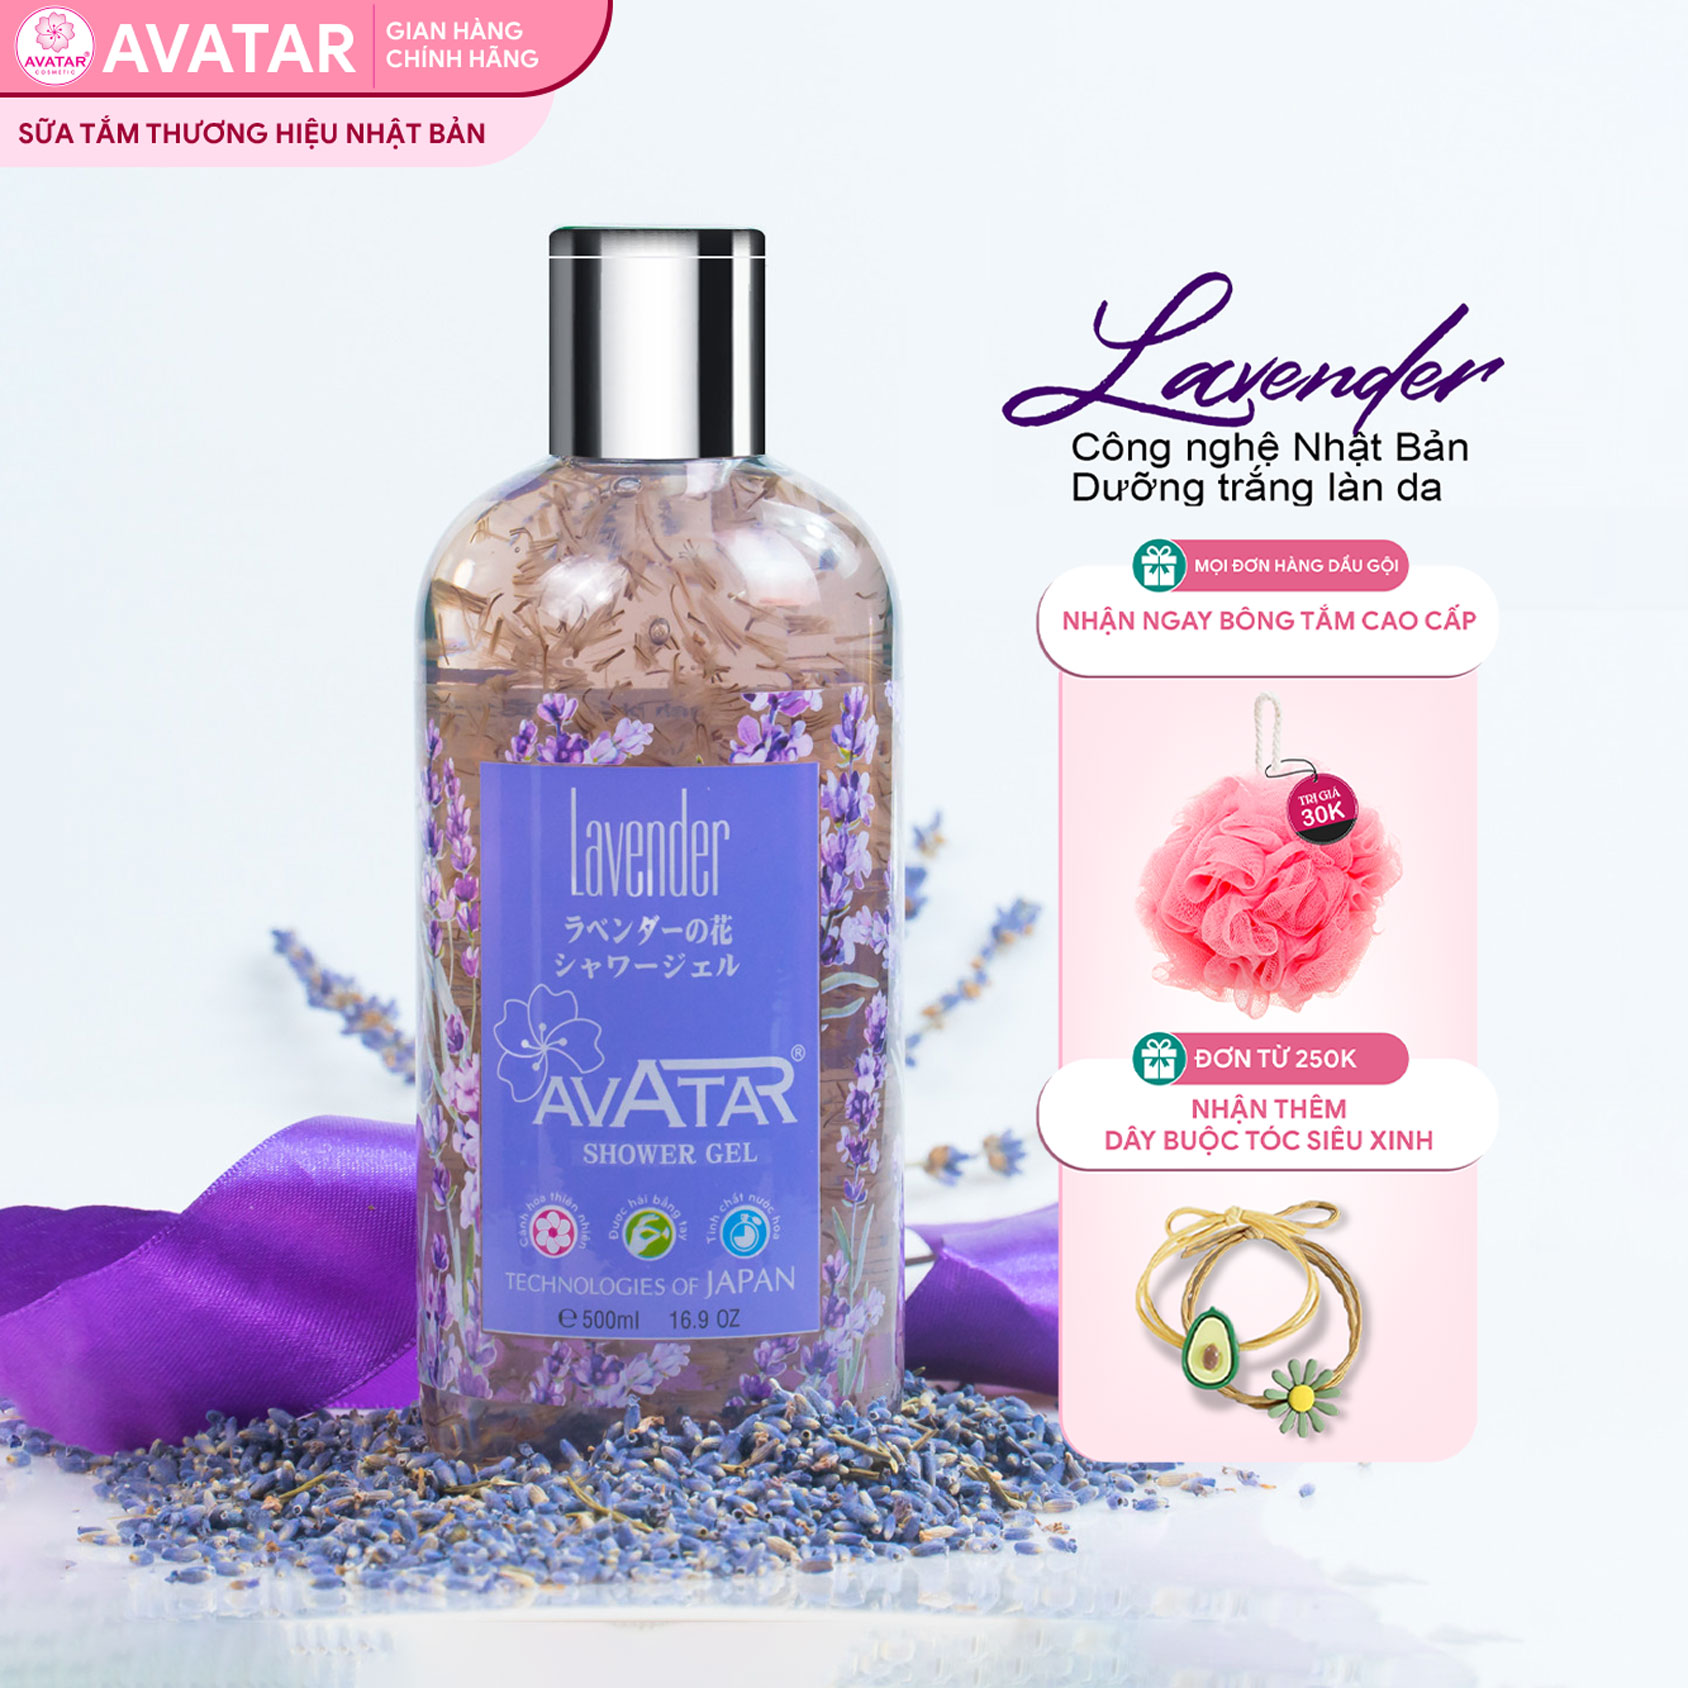 Sữa tắm Nhật  Bản Cao cấp AVATAR Lavender 500ml - Cánh hoa thật cùng tinh chất thiên nhiên 100%